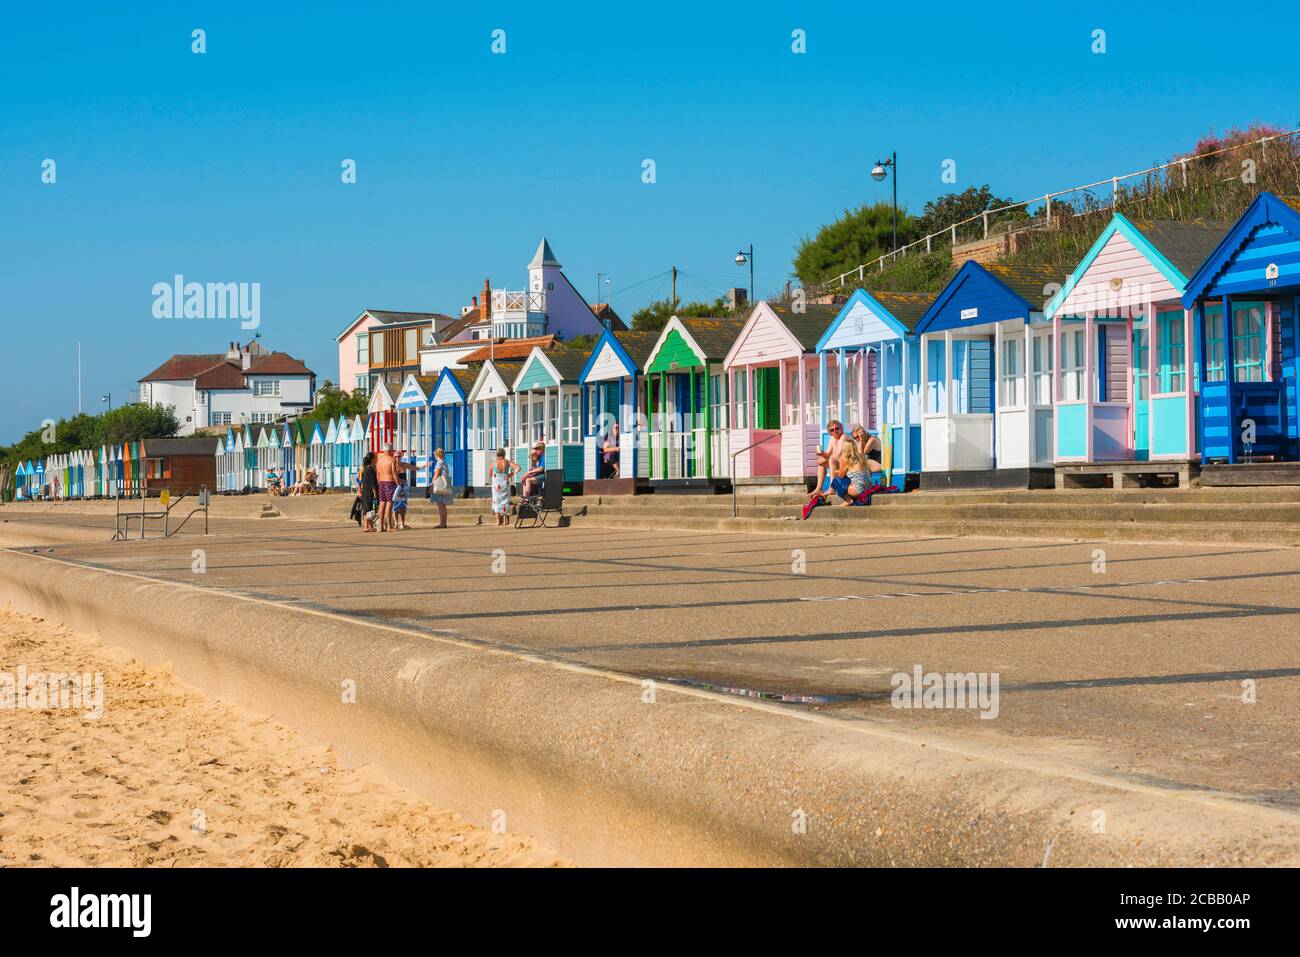 Bord de mer du Suffolk, vue en été des gens assis à l'extérieur de leurs huttes de plage colorées le long du front de mer à Southwold sur la côte du Suffolk, Angleterre, Royaume-Uni Banque D'Images